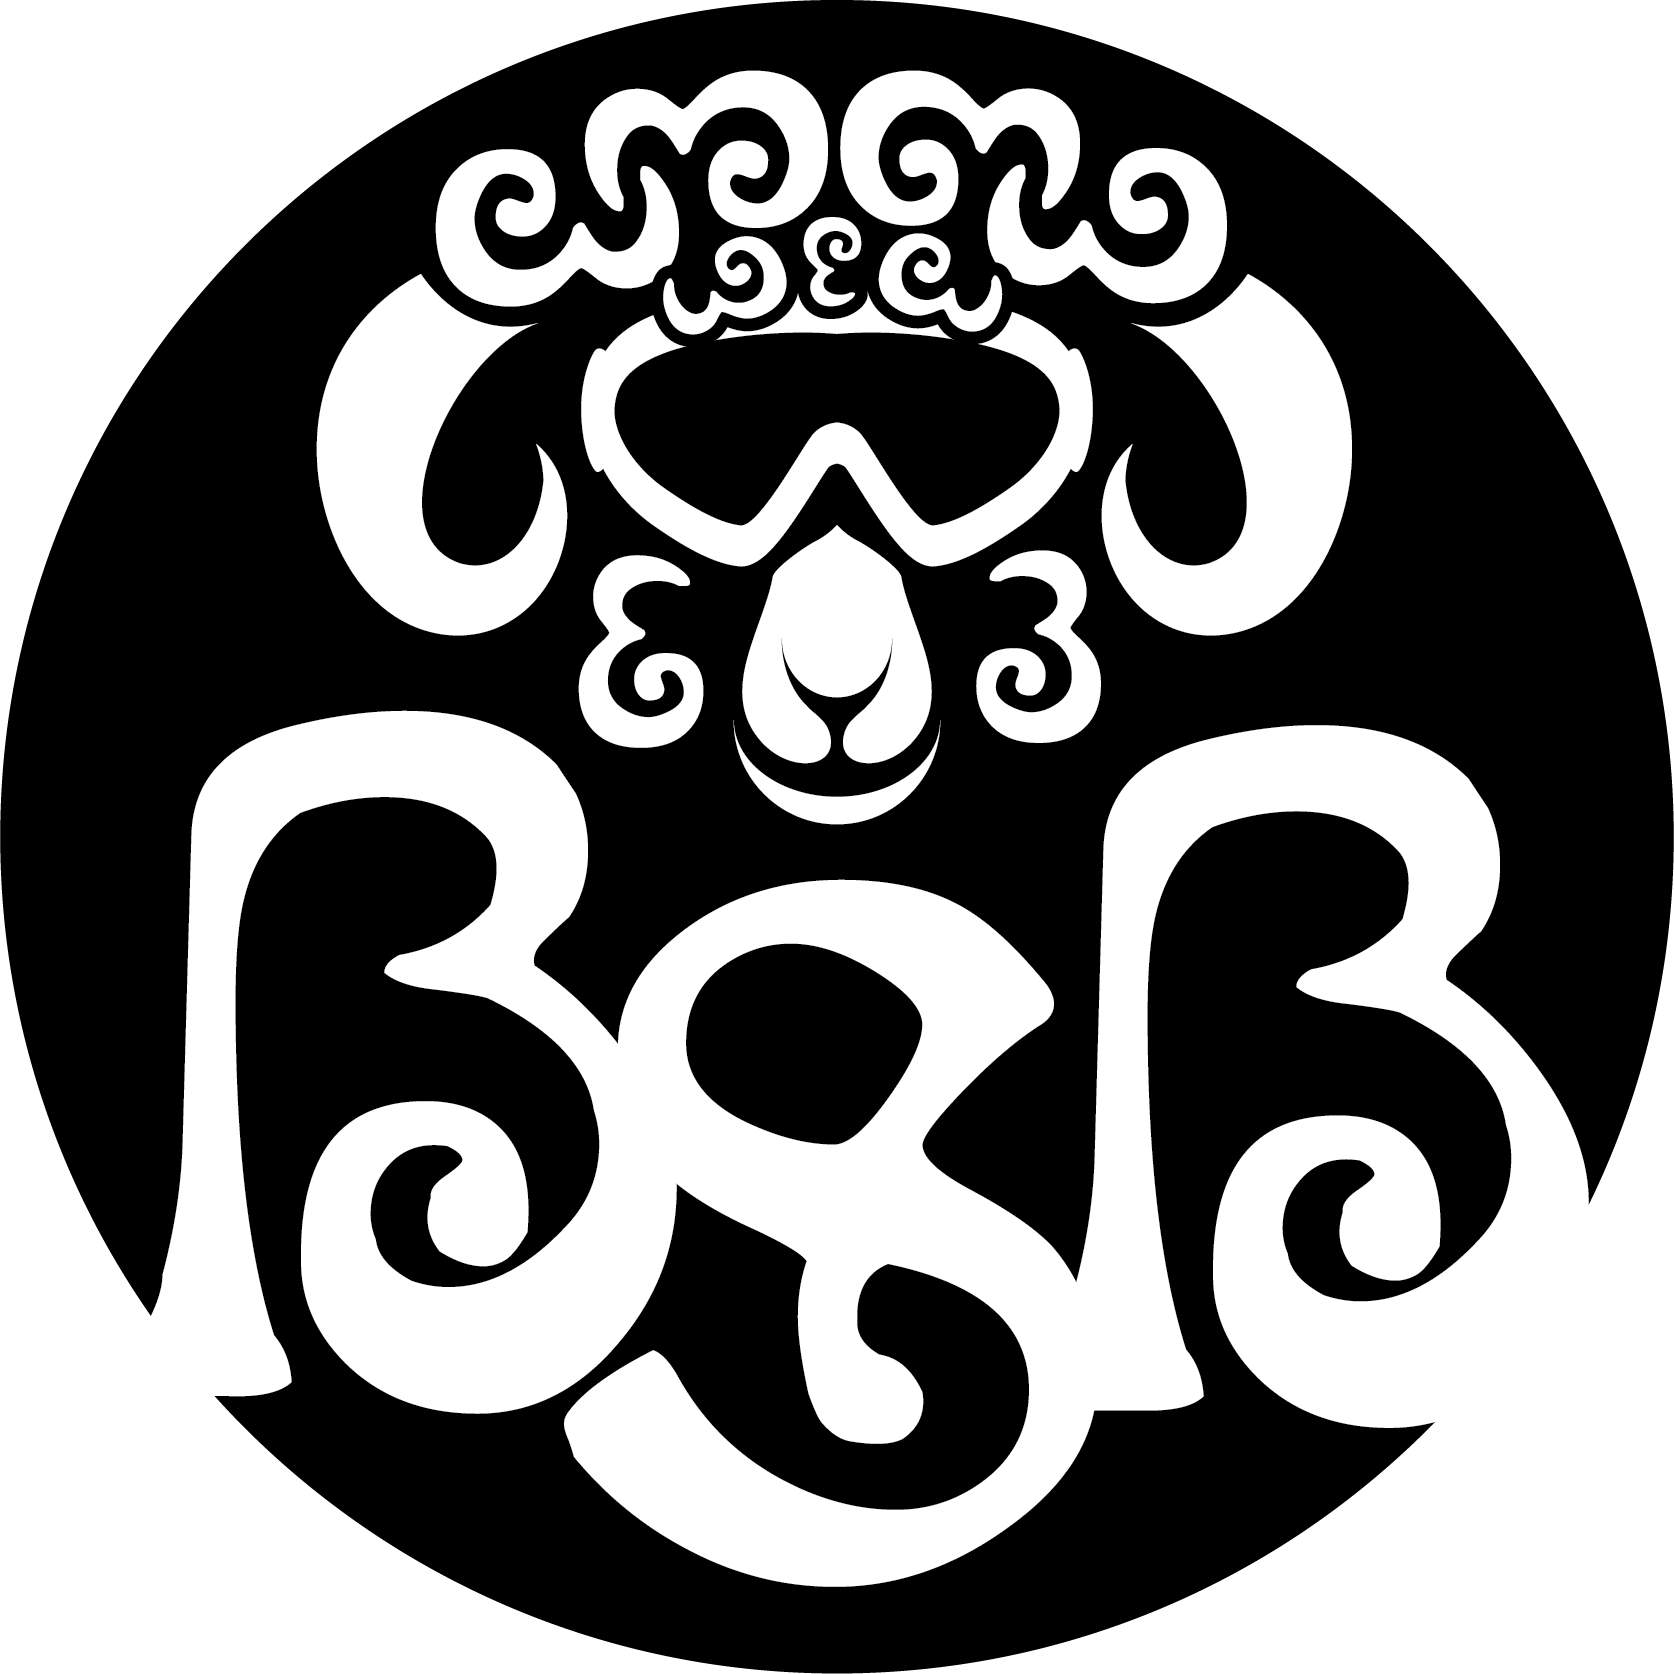 Black Sheep Bar Logo